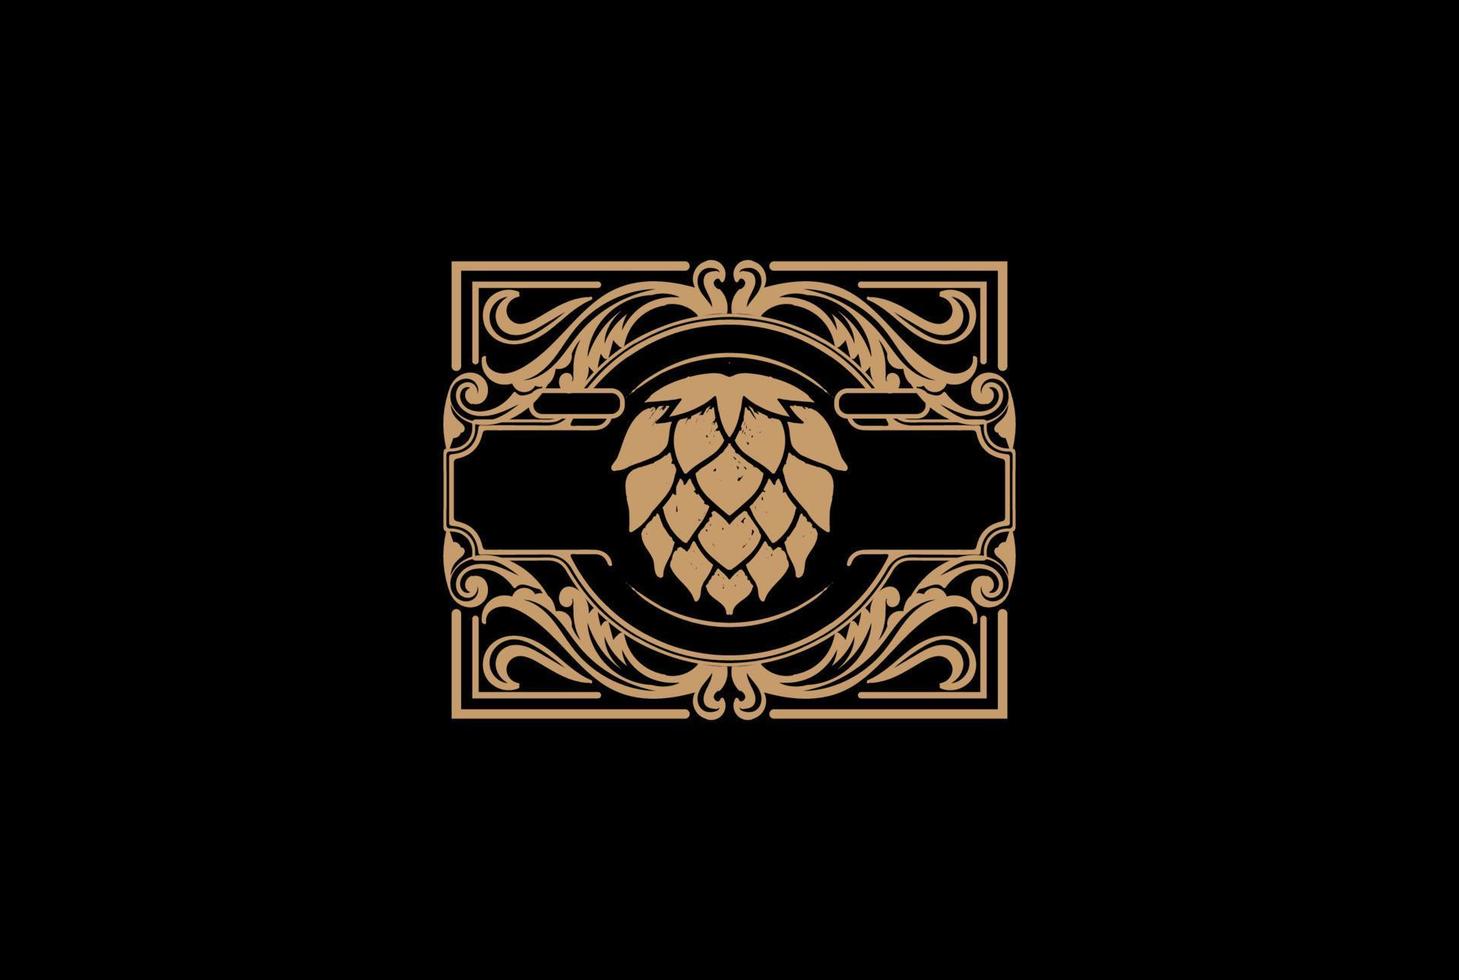 vieux houblon vert vintage pour la bière artisanale, le brassage ou le vecteur de conception de logo d'étiquette de brasserie